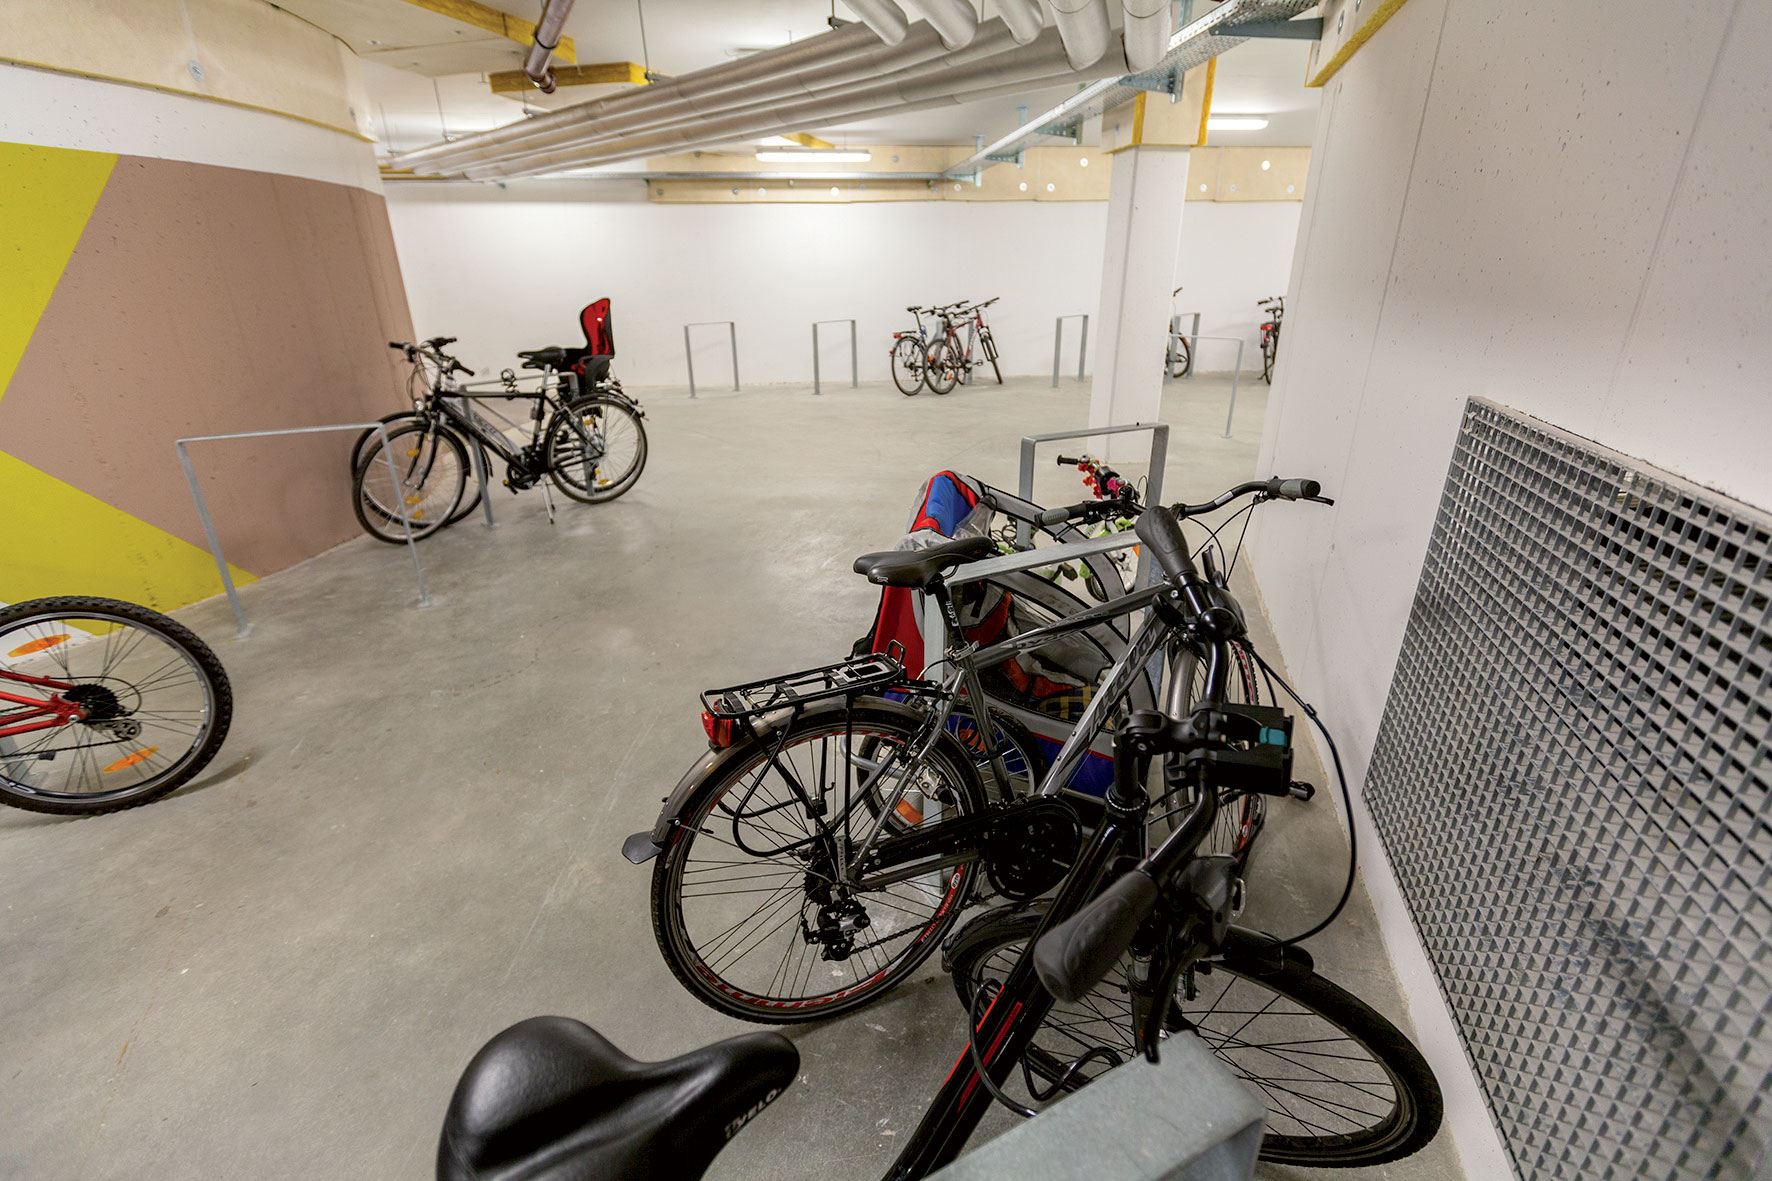 V priestoroch garáží pod bytovými domami nie sú miesta pre autá, ale pre bicykle. Zmestí sa ich tu 250 a sú prepojené chodbou. Vo Viedni platí nová norma, že keď sa navrhne 6 miest na bicykle, ušetrí sa jedno parkovné miesto na auto.